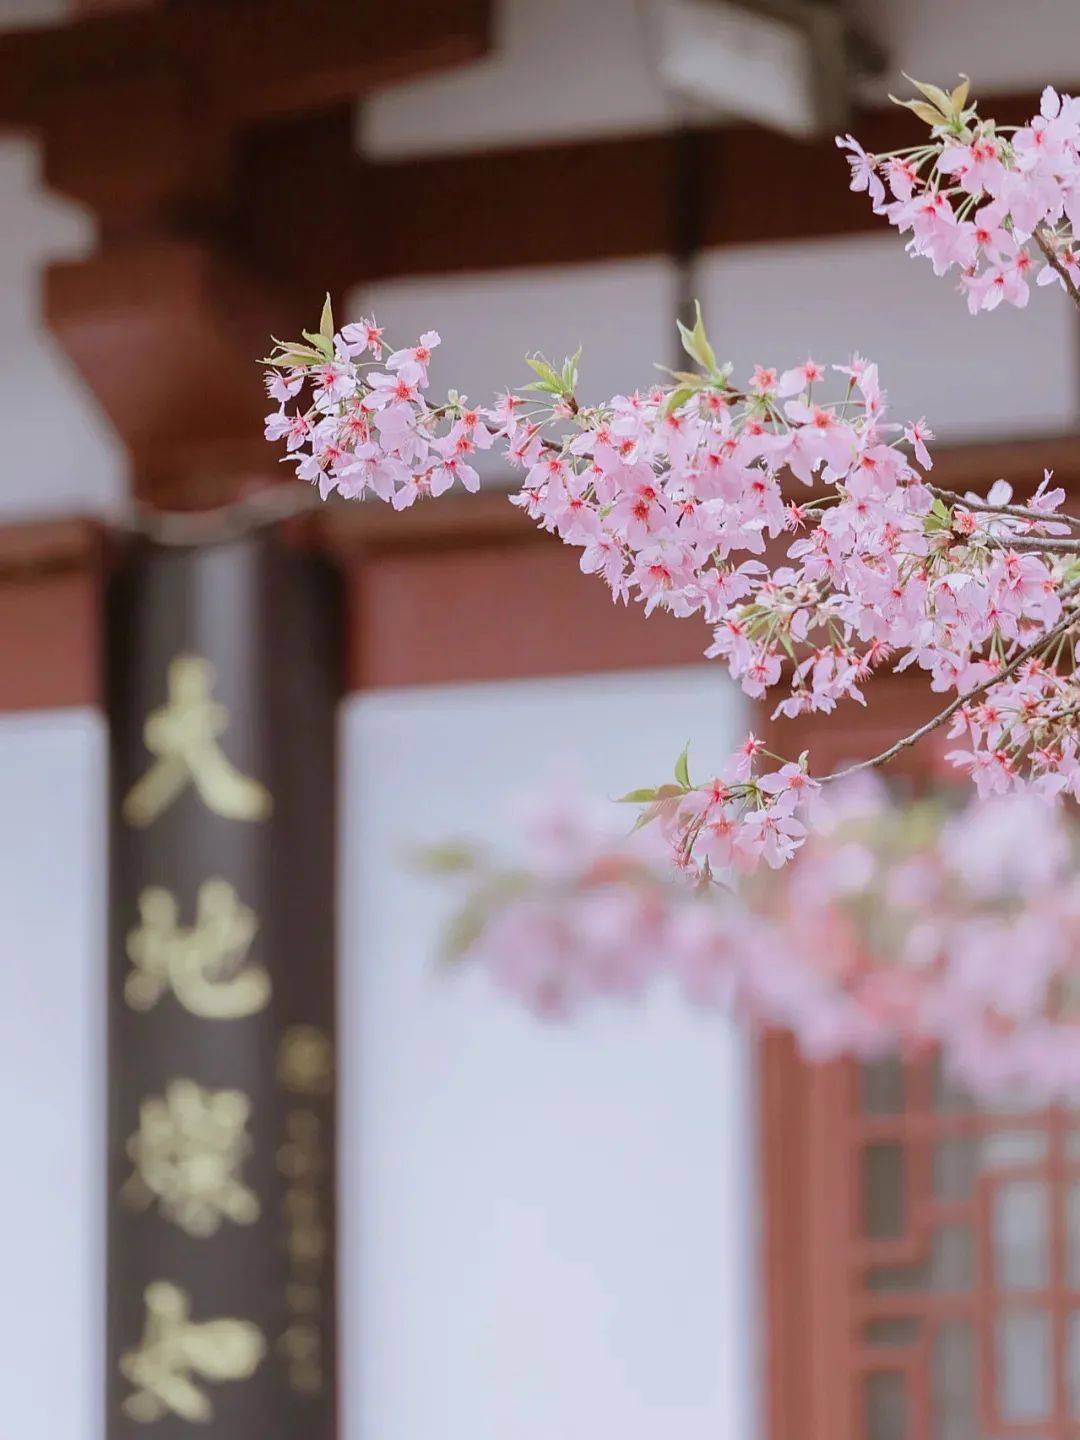 2020没办法去看的武汉樱花，今年终于可以补上了！